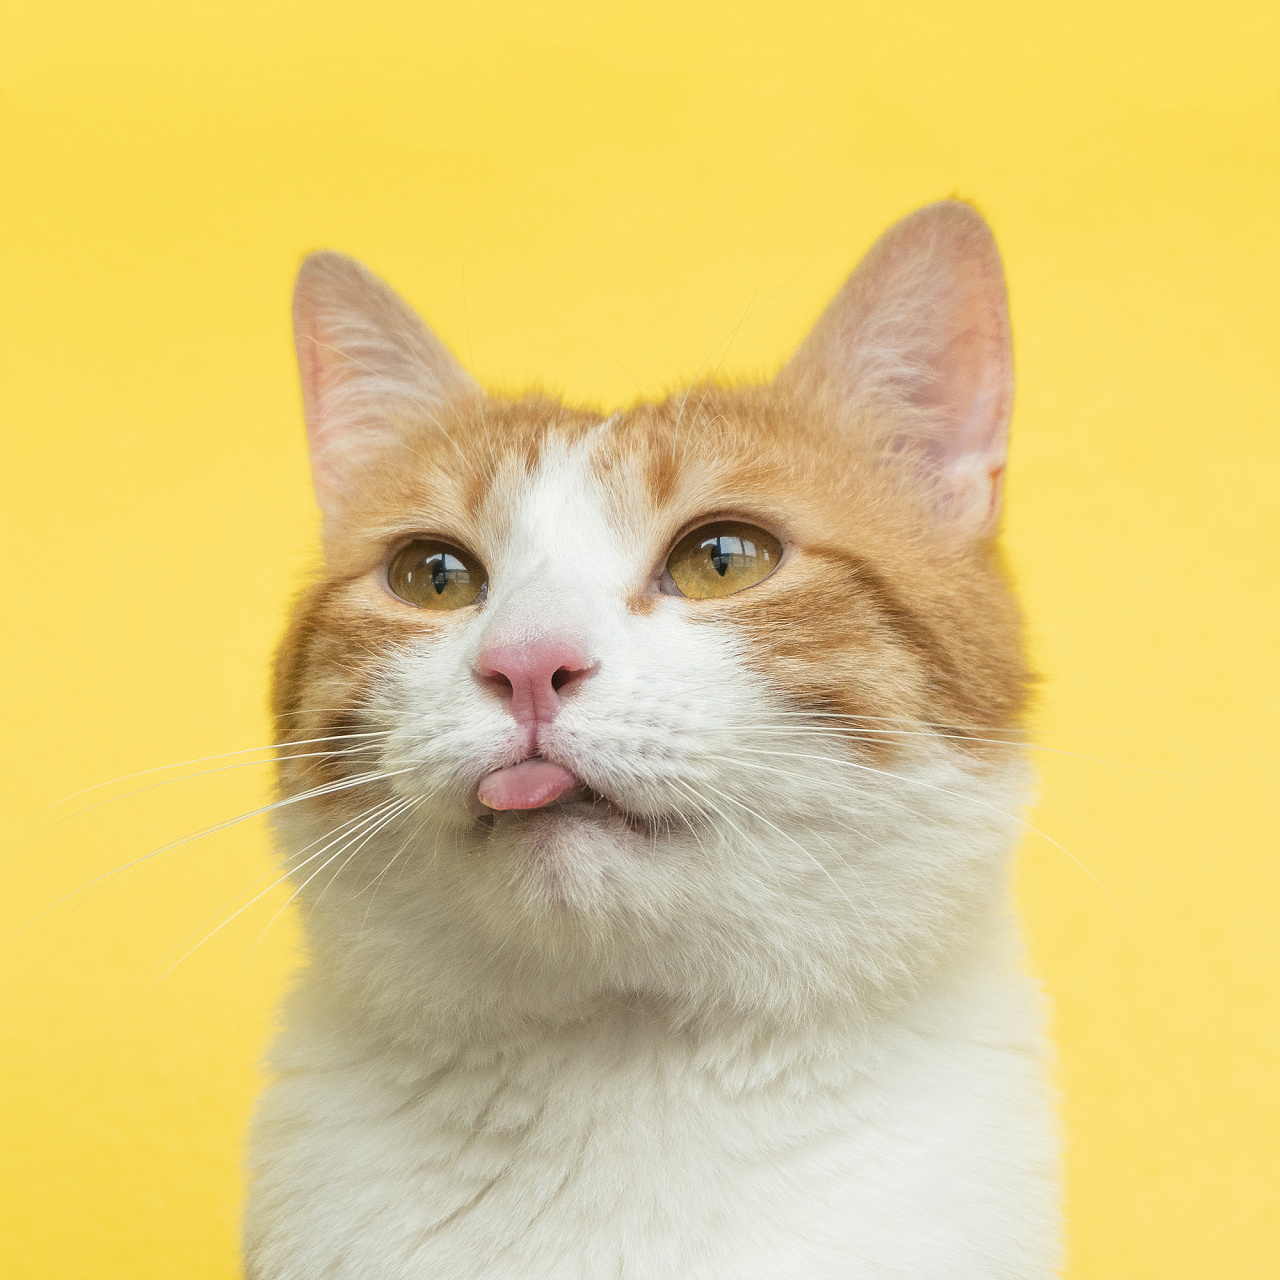 伸出他的舌头的猫 库存图片. 图片 包括有 他的, 查找, 舌头, 停留, 外出 - 119054915